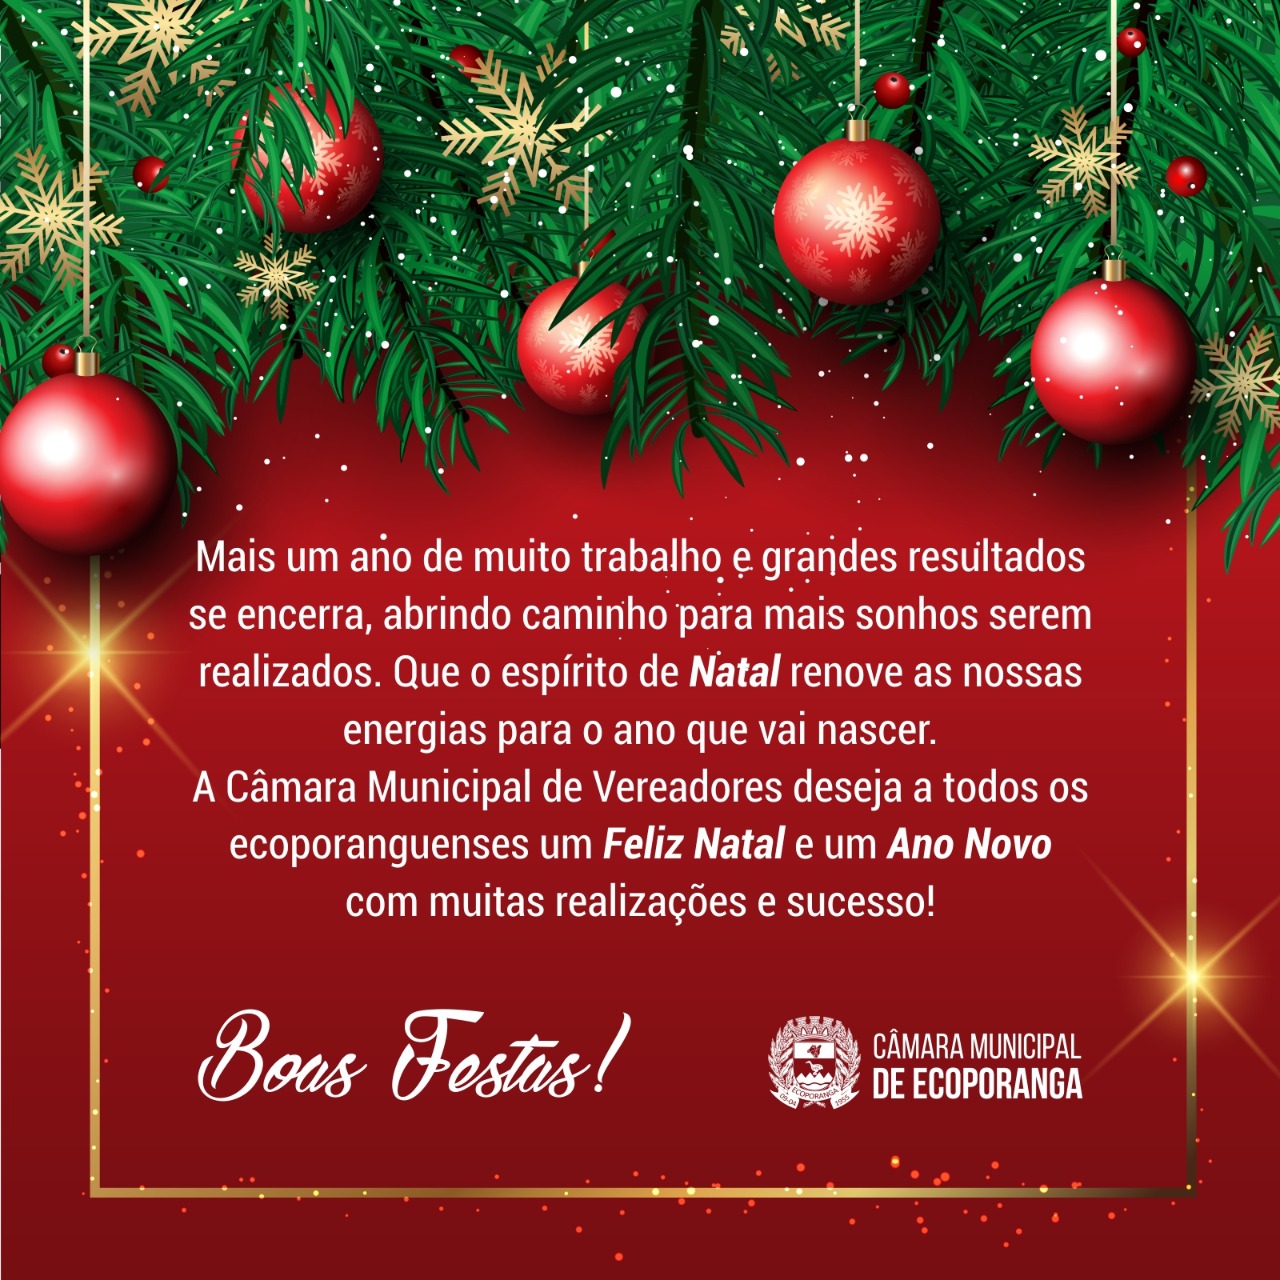 Feliz Natal e um Próspero Ano Novo. — Camara Municipal de Pradópolis